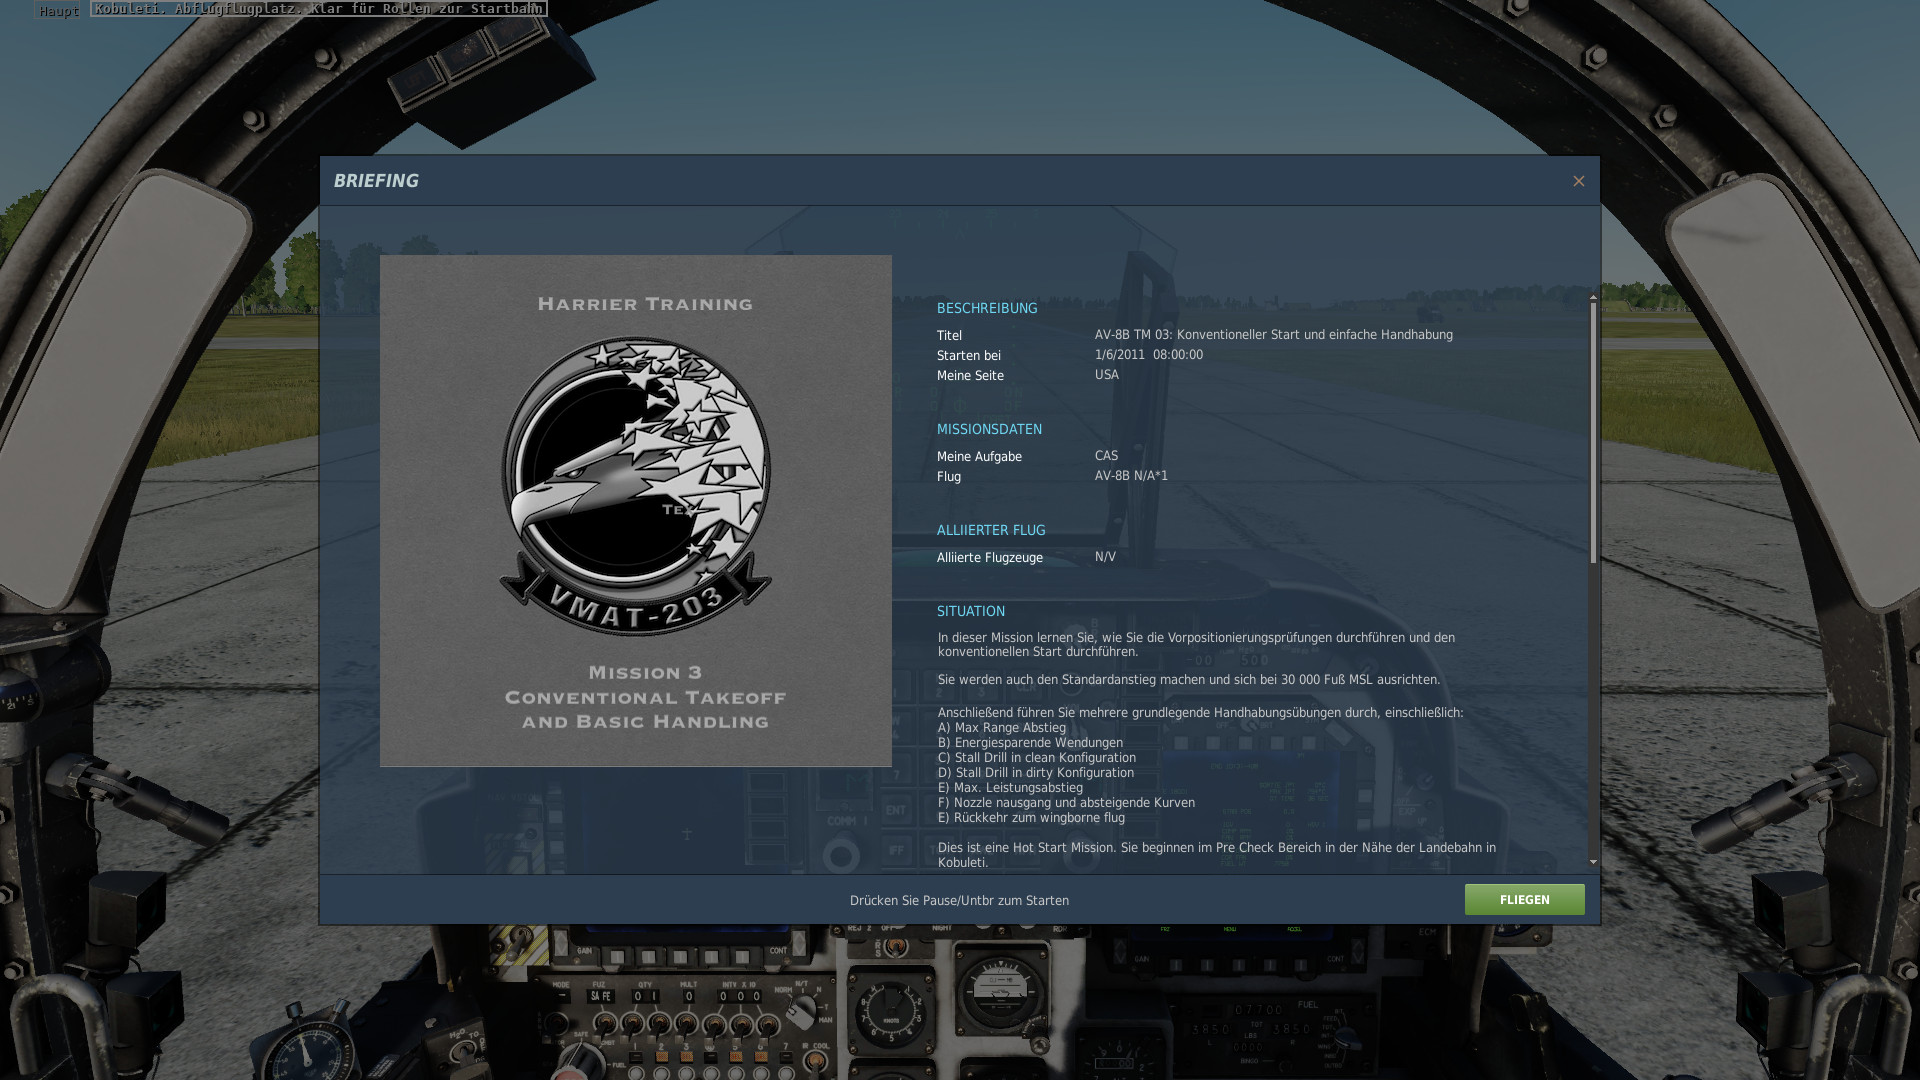 Update 1.1 is ONLINE 14.4. 2021 Deutsche Übersetzung der Mission, Training,Campaign  texte  für die Harrier AV-8B